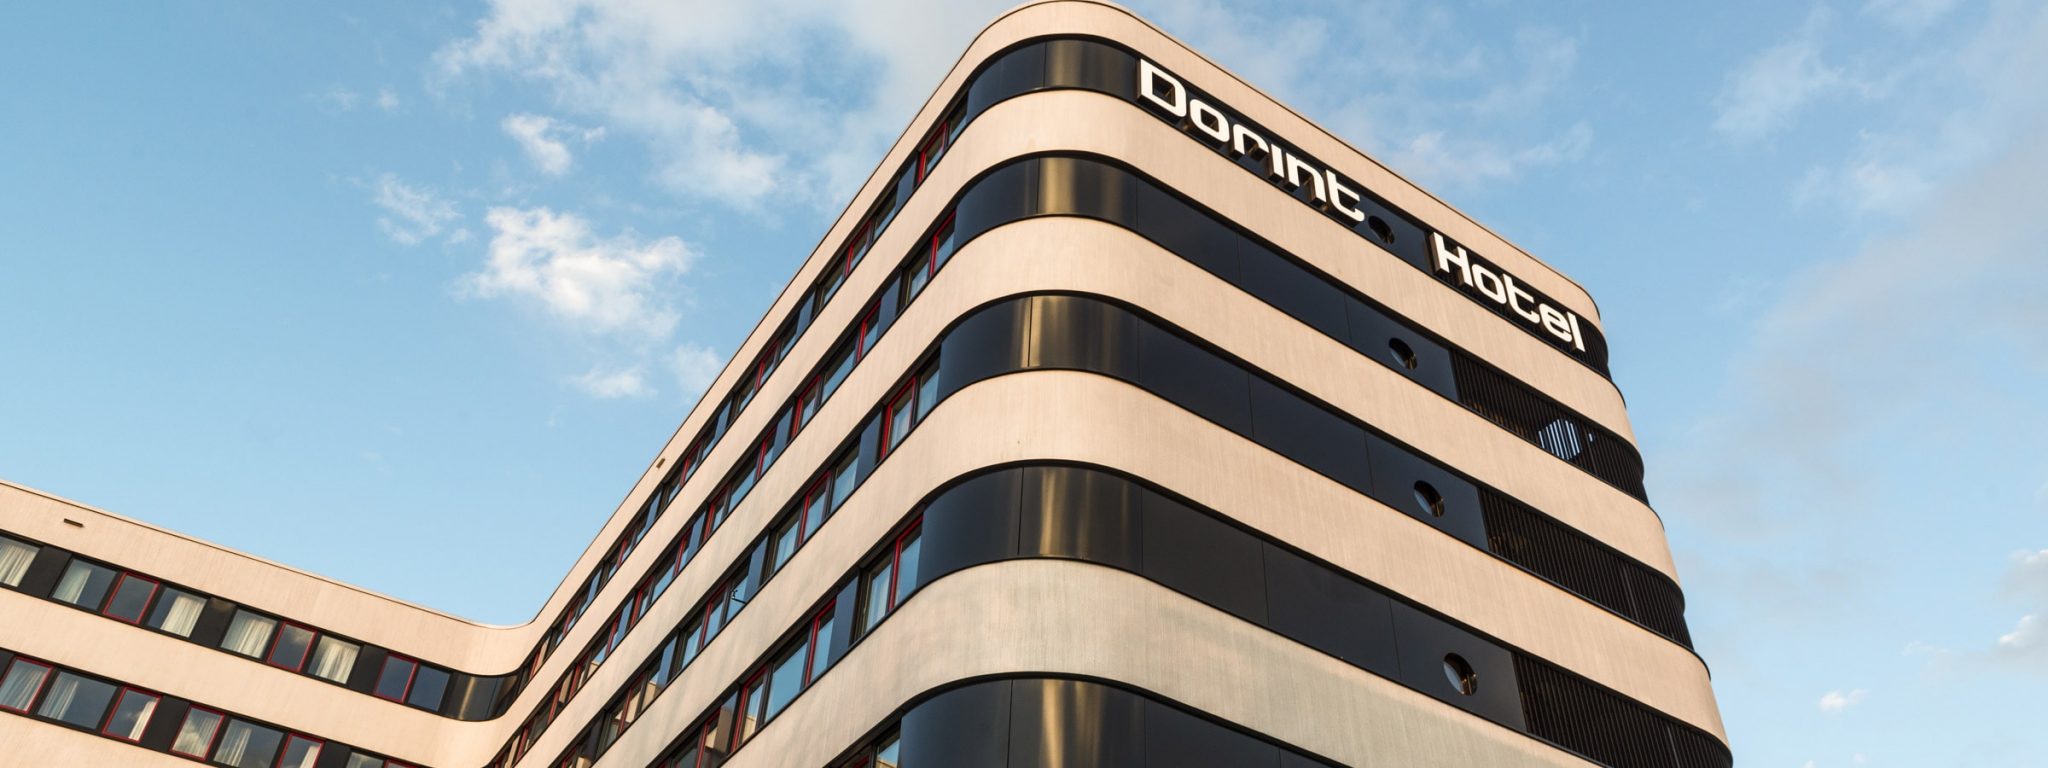 Dorint Airport-Hotel Zürich